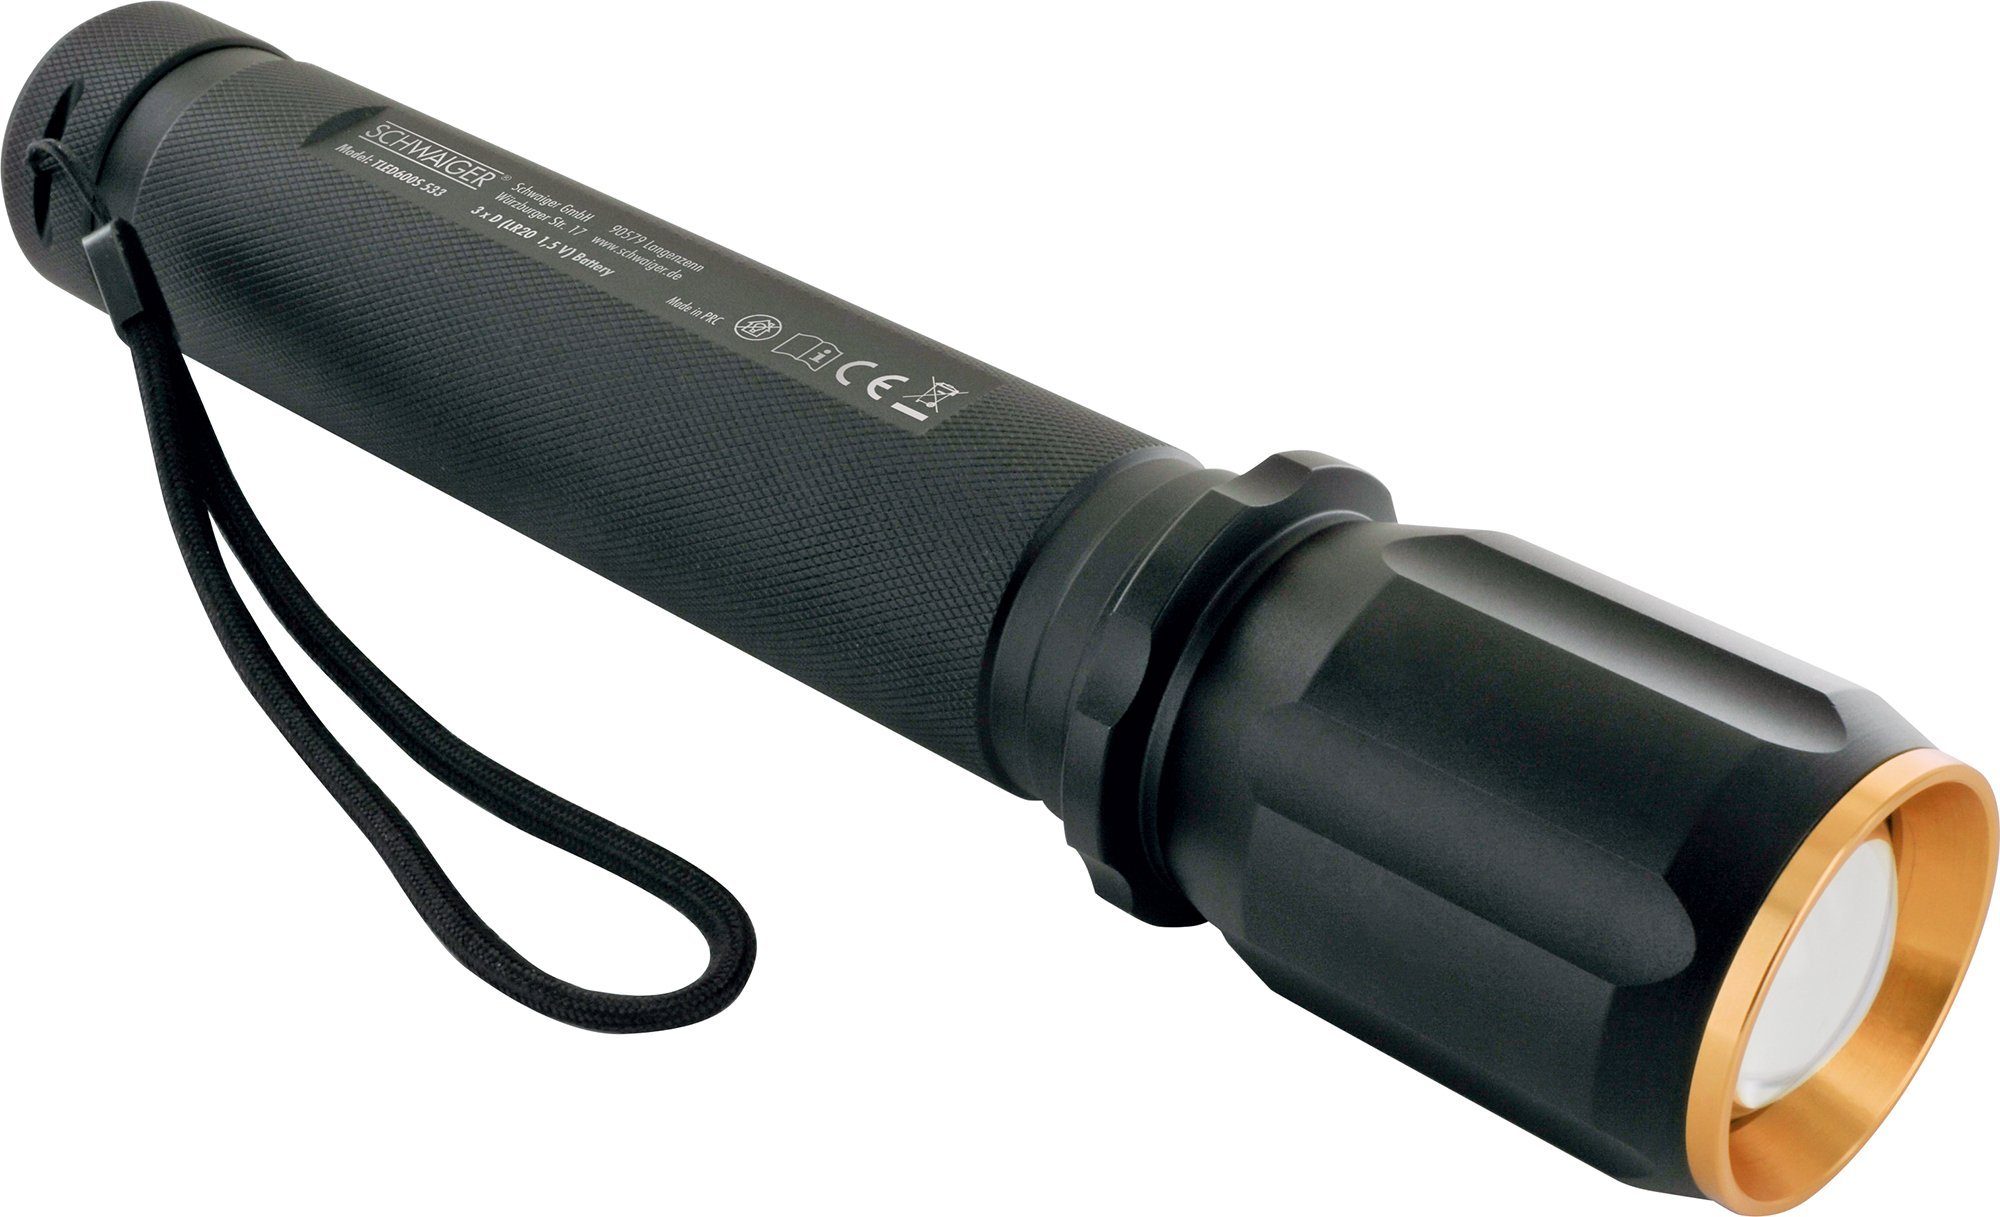 533 spritzwassergeschützt), LED einstellbar Taschenlampe Lichtkegel (Zoomfunktion, 1-St., TLED600S schlagfest, Schwaiger